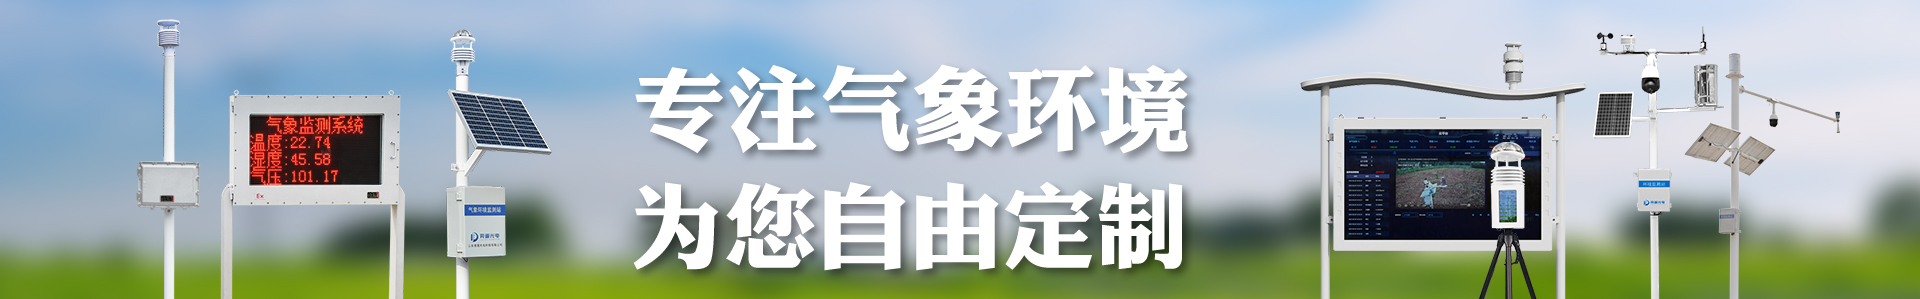 风速风向记录仪_风速风向测量仪-自动气象站-小型气象站-防爆气象站-光伏气象站-南宫NG·28(中国)官方网站